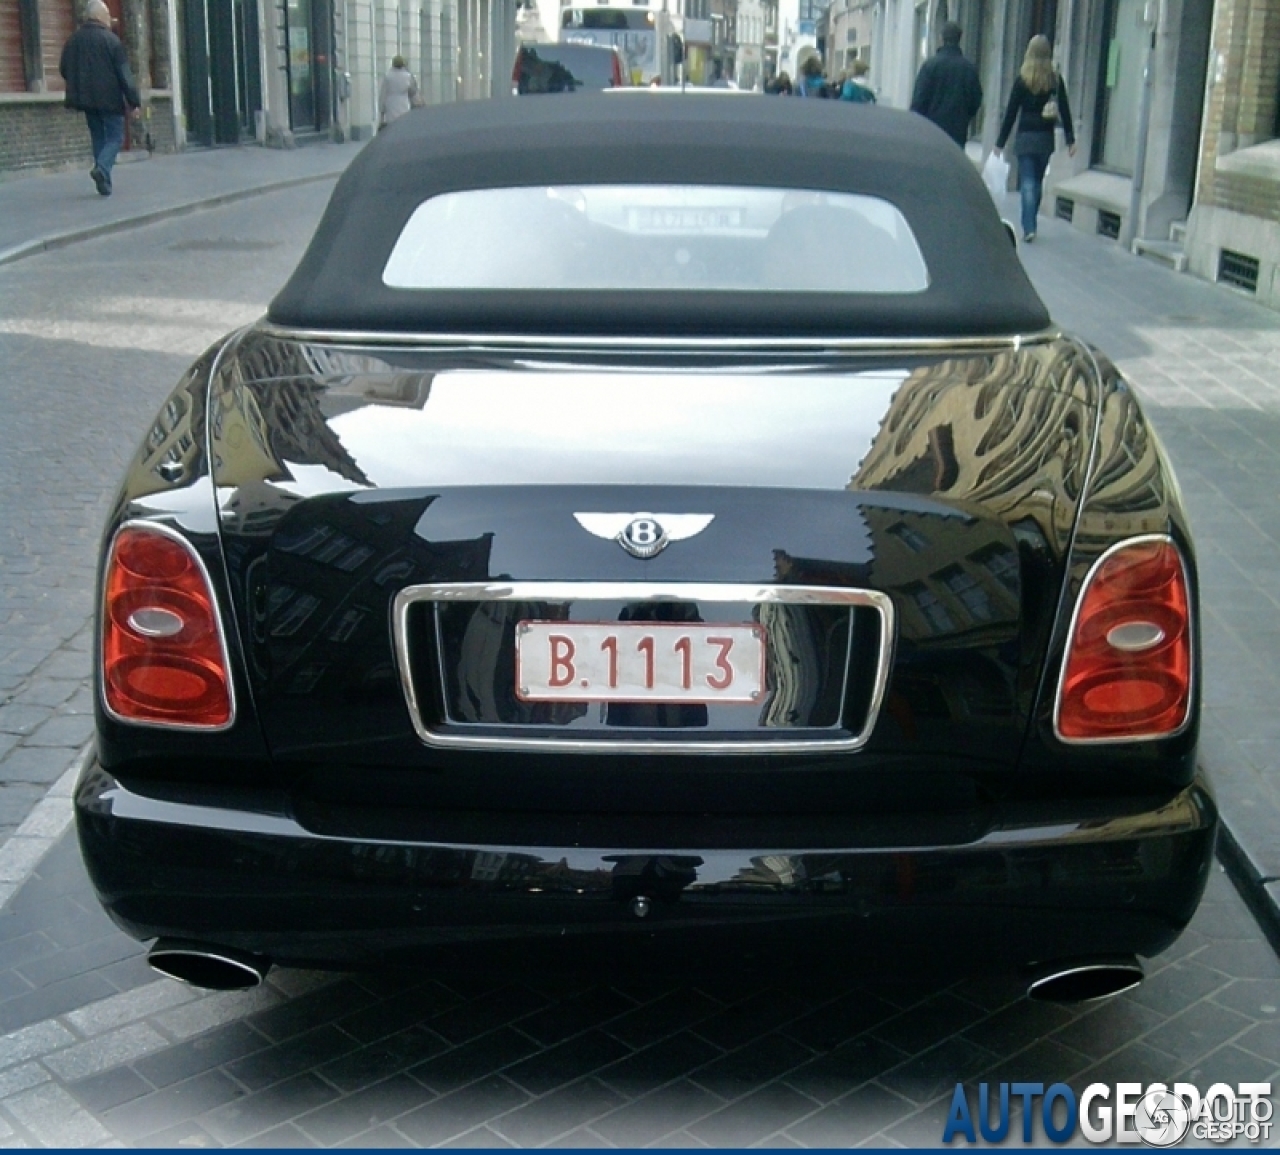 Bentley Azure 2006